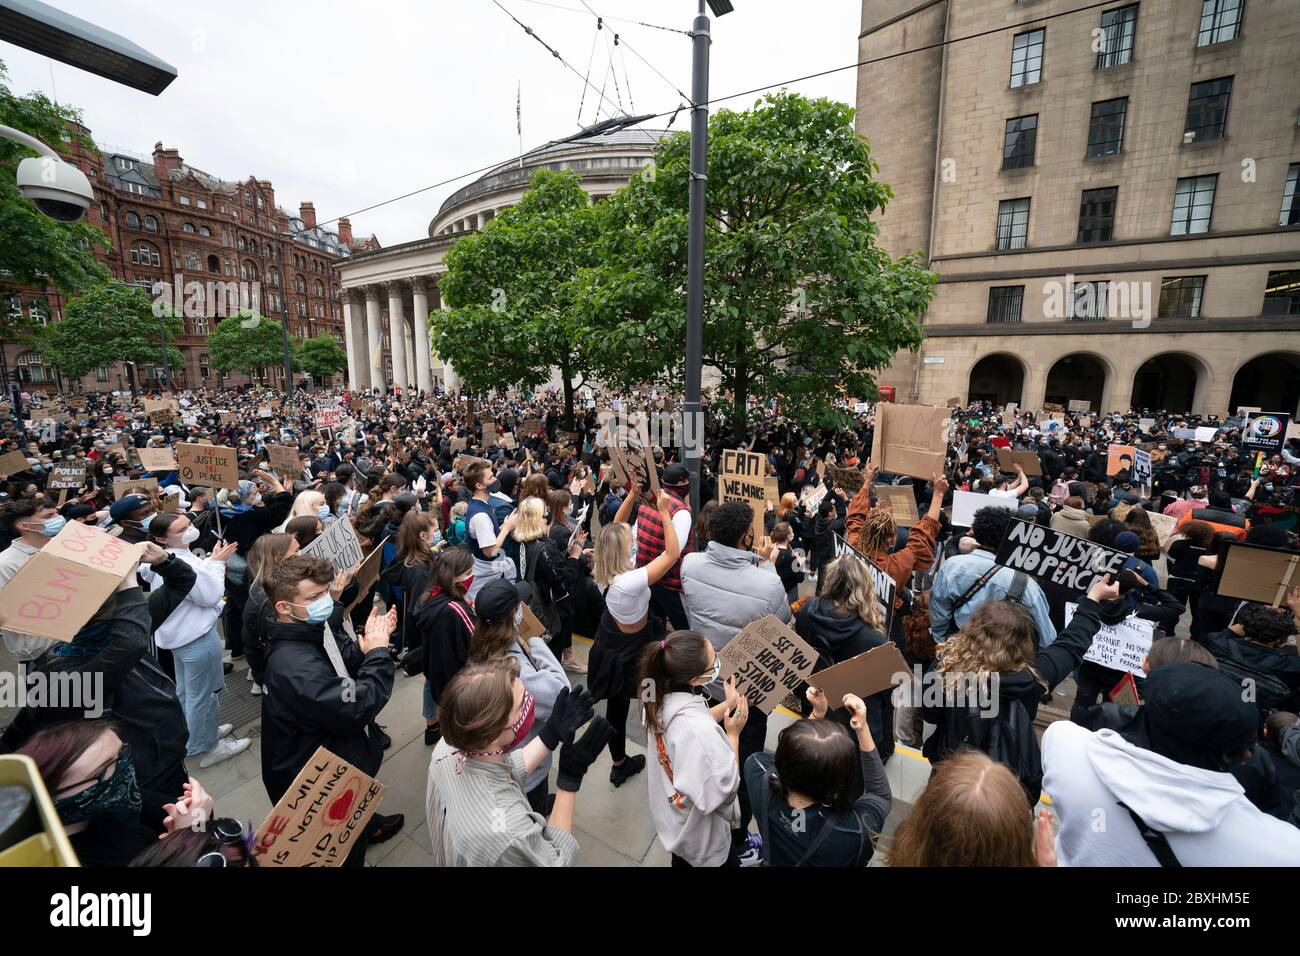 Manchester, Reino Unido. 7 de junio de 2020. Los miembros del público son vistos en una protesta de Black Lives Matter, Manchester, Reino Unido. Crédito: Jon Super/Alamy Live News. Foto de stock